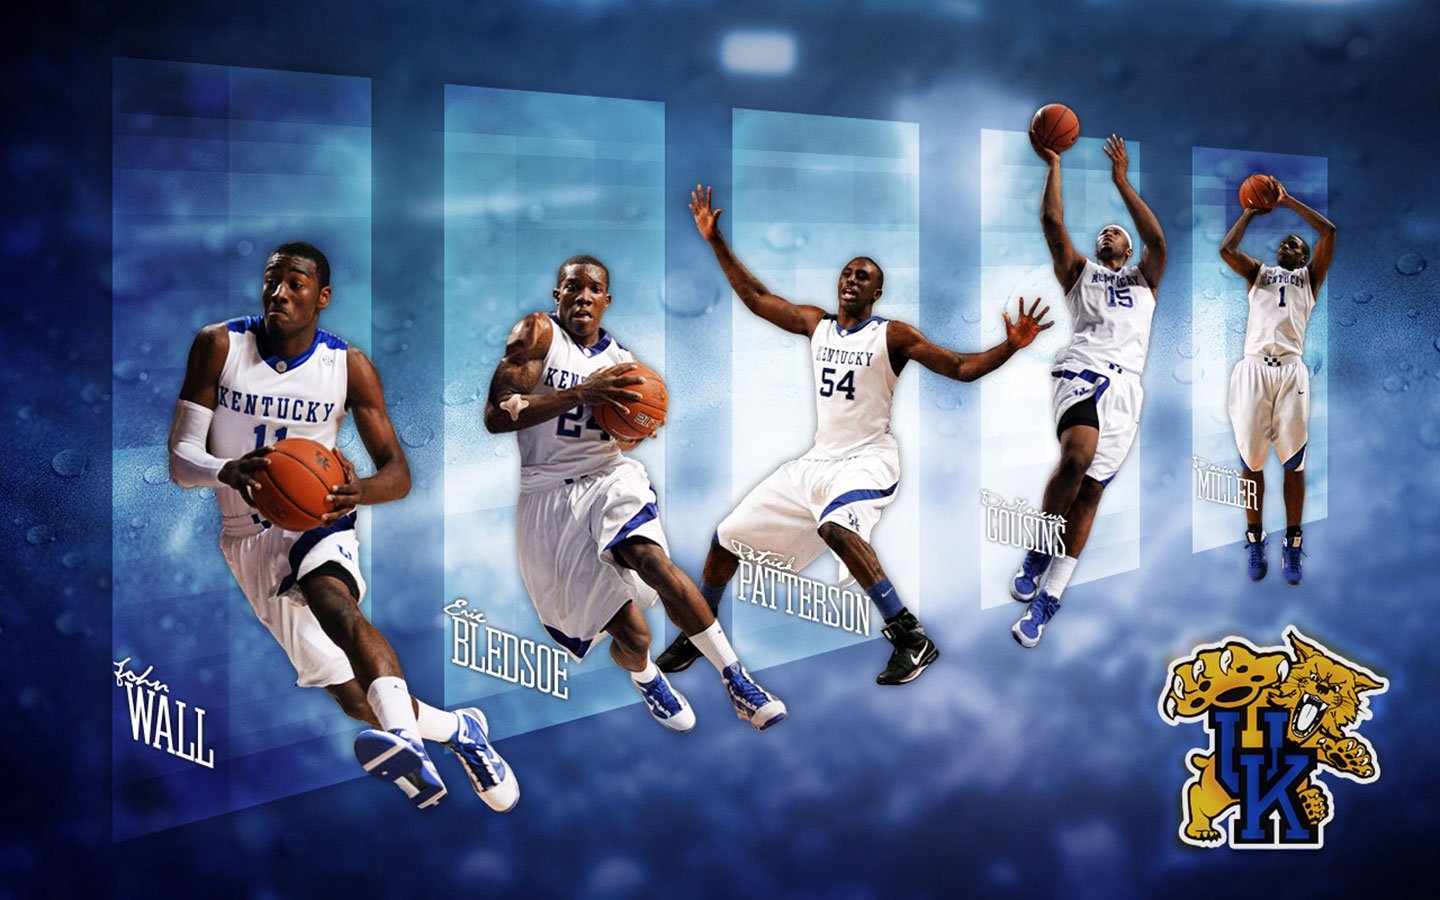 Kentucky Wildcats 2010 Starting 5 Wallpaper Basketball